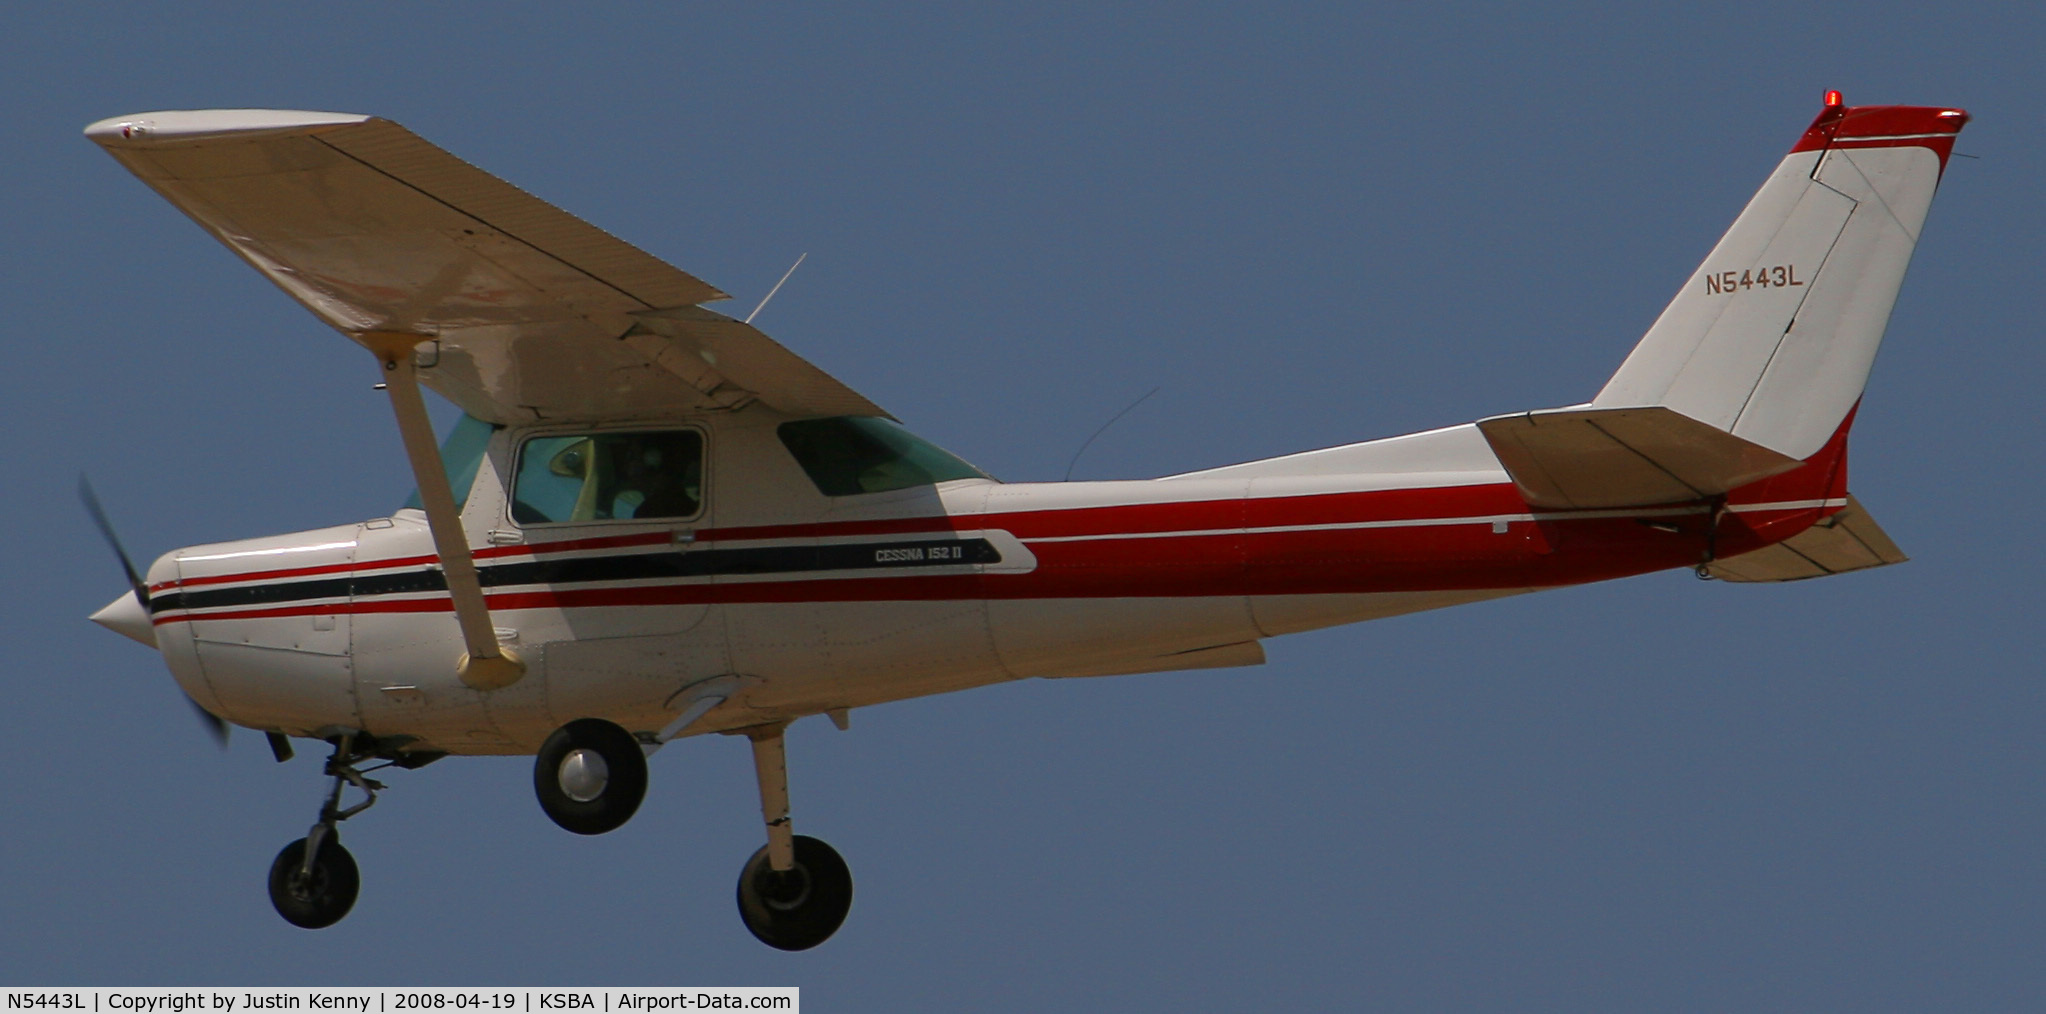 N5443L, 1980 Cessna 152 C/N 15284315, N5443L Landing on runway 25 at KSBA